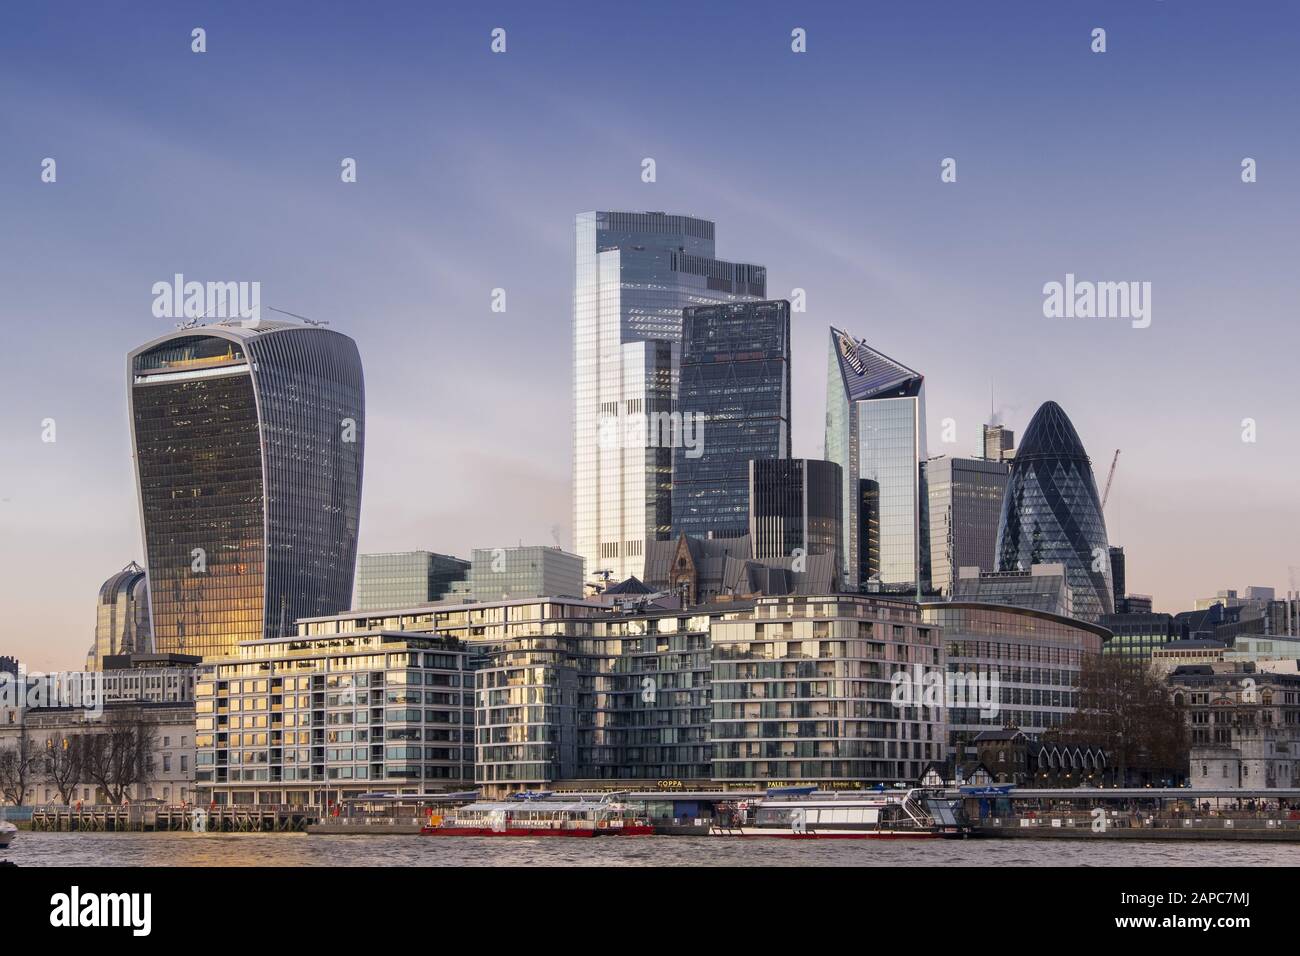 Le quartier des affaires de Londres avec le Walkie Talkie, le Gherkin et le vingt-Deux bâtiment nouvellement achevé, le plus haut du quartier financier de la ville de Londres Banque D'Images